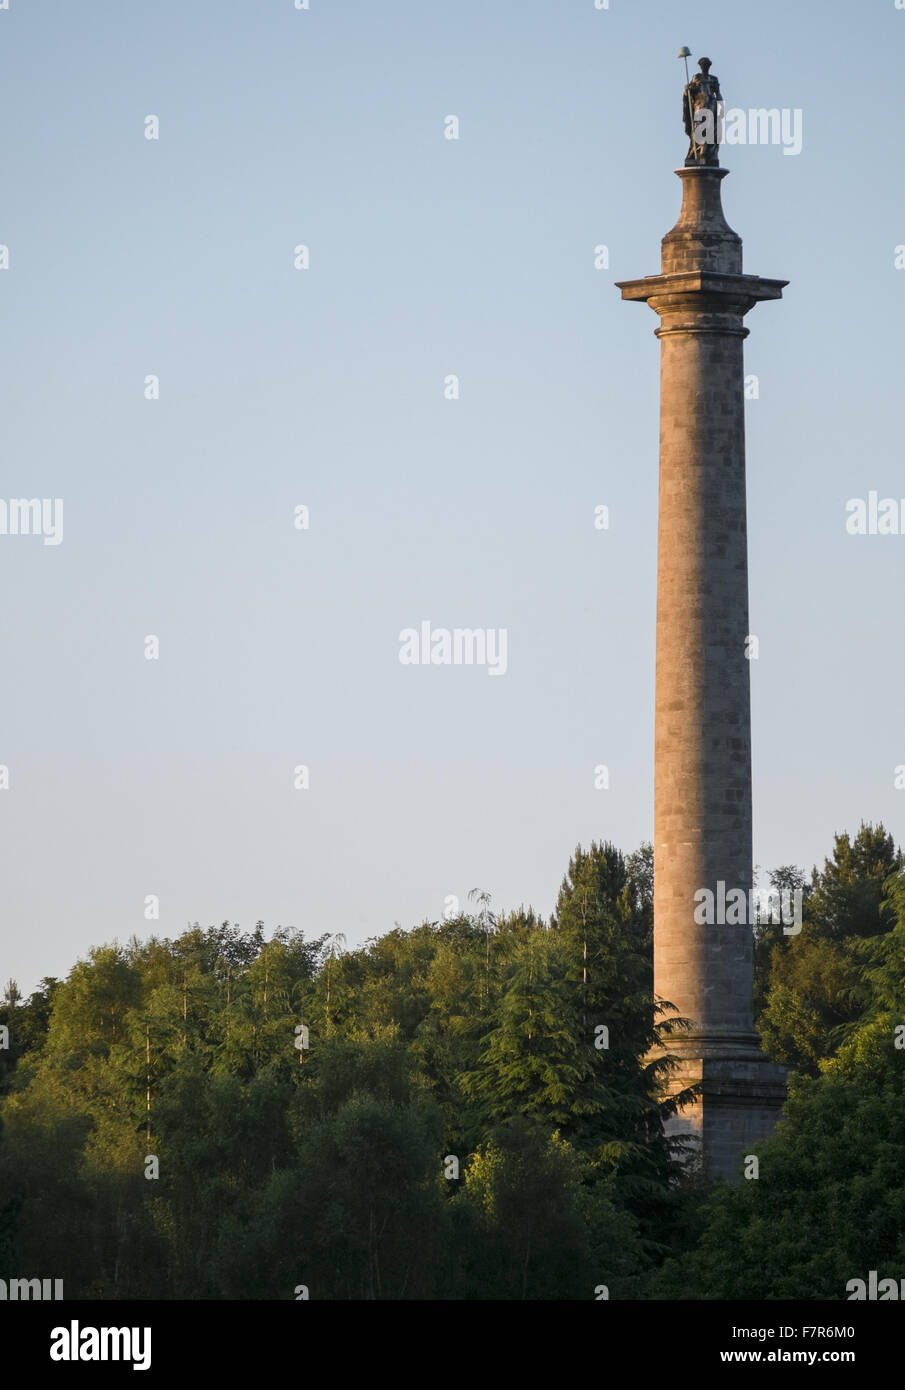 La colonna a Liberty a Gibside, Tyne & Wear. Gibside è stato creato da uno degli uomini più ricchi in Georgian England, e offre viste fantastiche, ampi spazi aperti, affascinanti edifici storici e rovine. Foto Stock